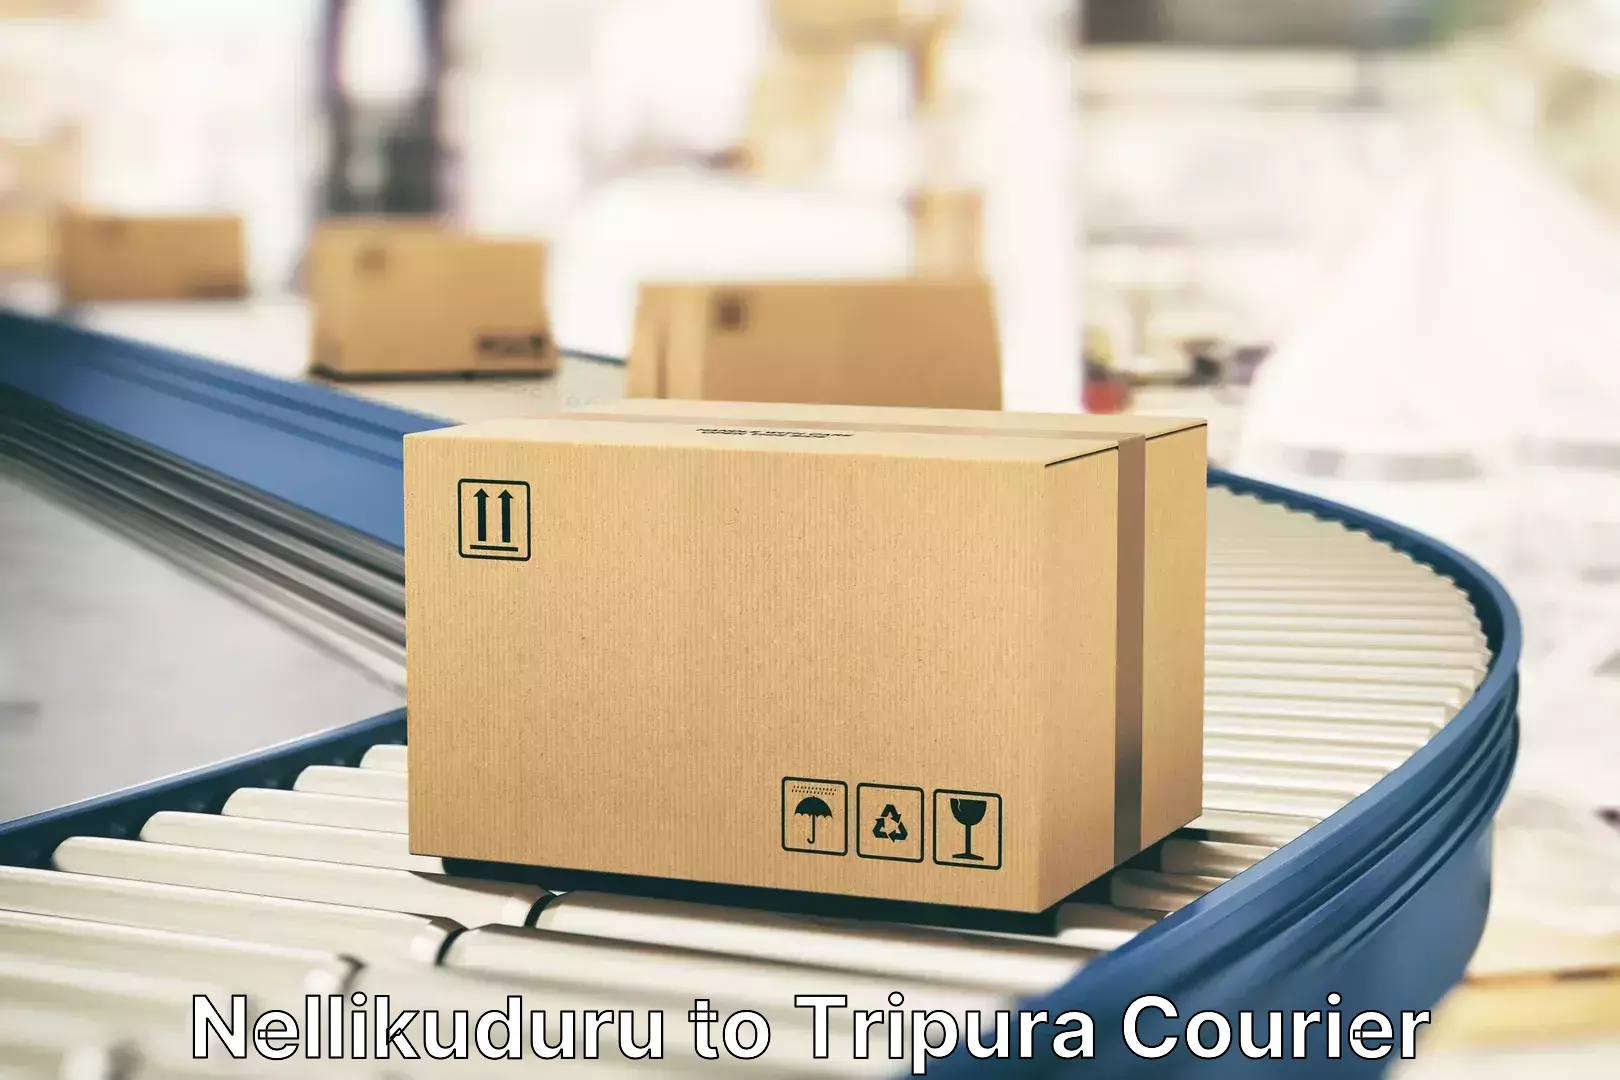 High-quality baggage shipment Nellikuduru to Tripura